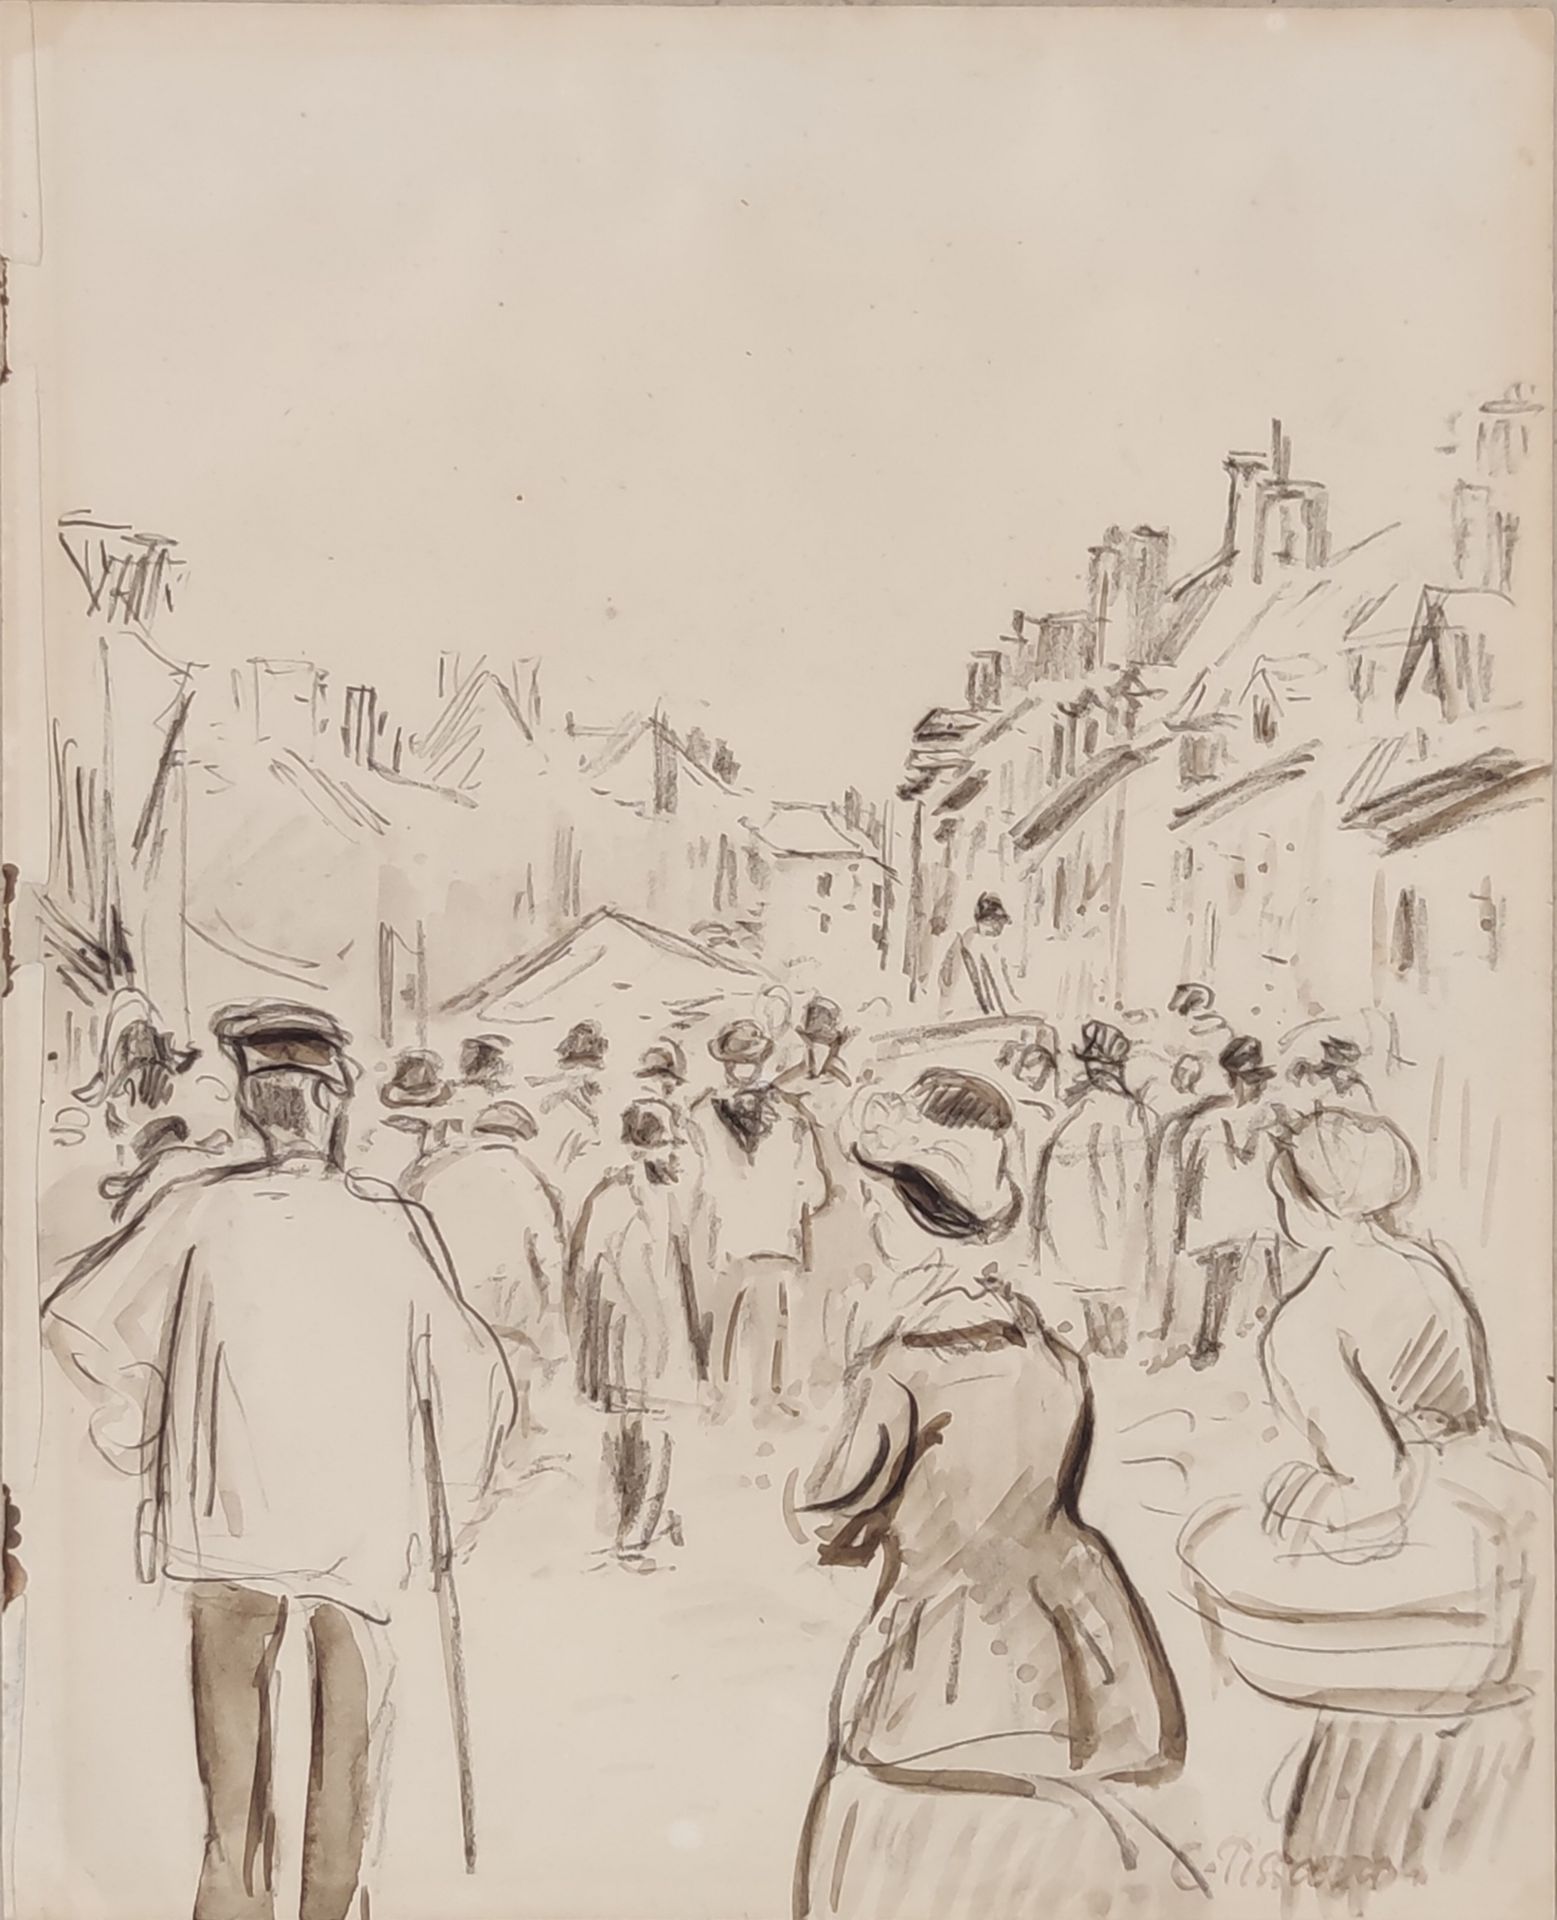 Null 
Camilo PISSARRO (1830-1903)

El mercado de la calle Cappeville en Gisors

&hellip;